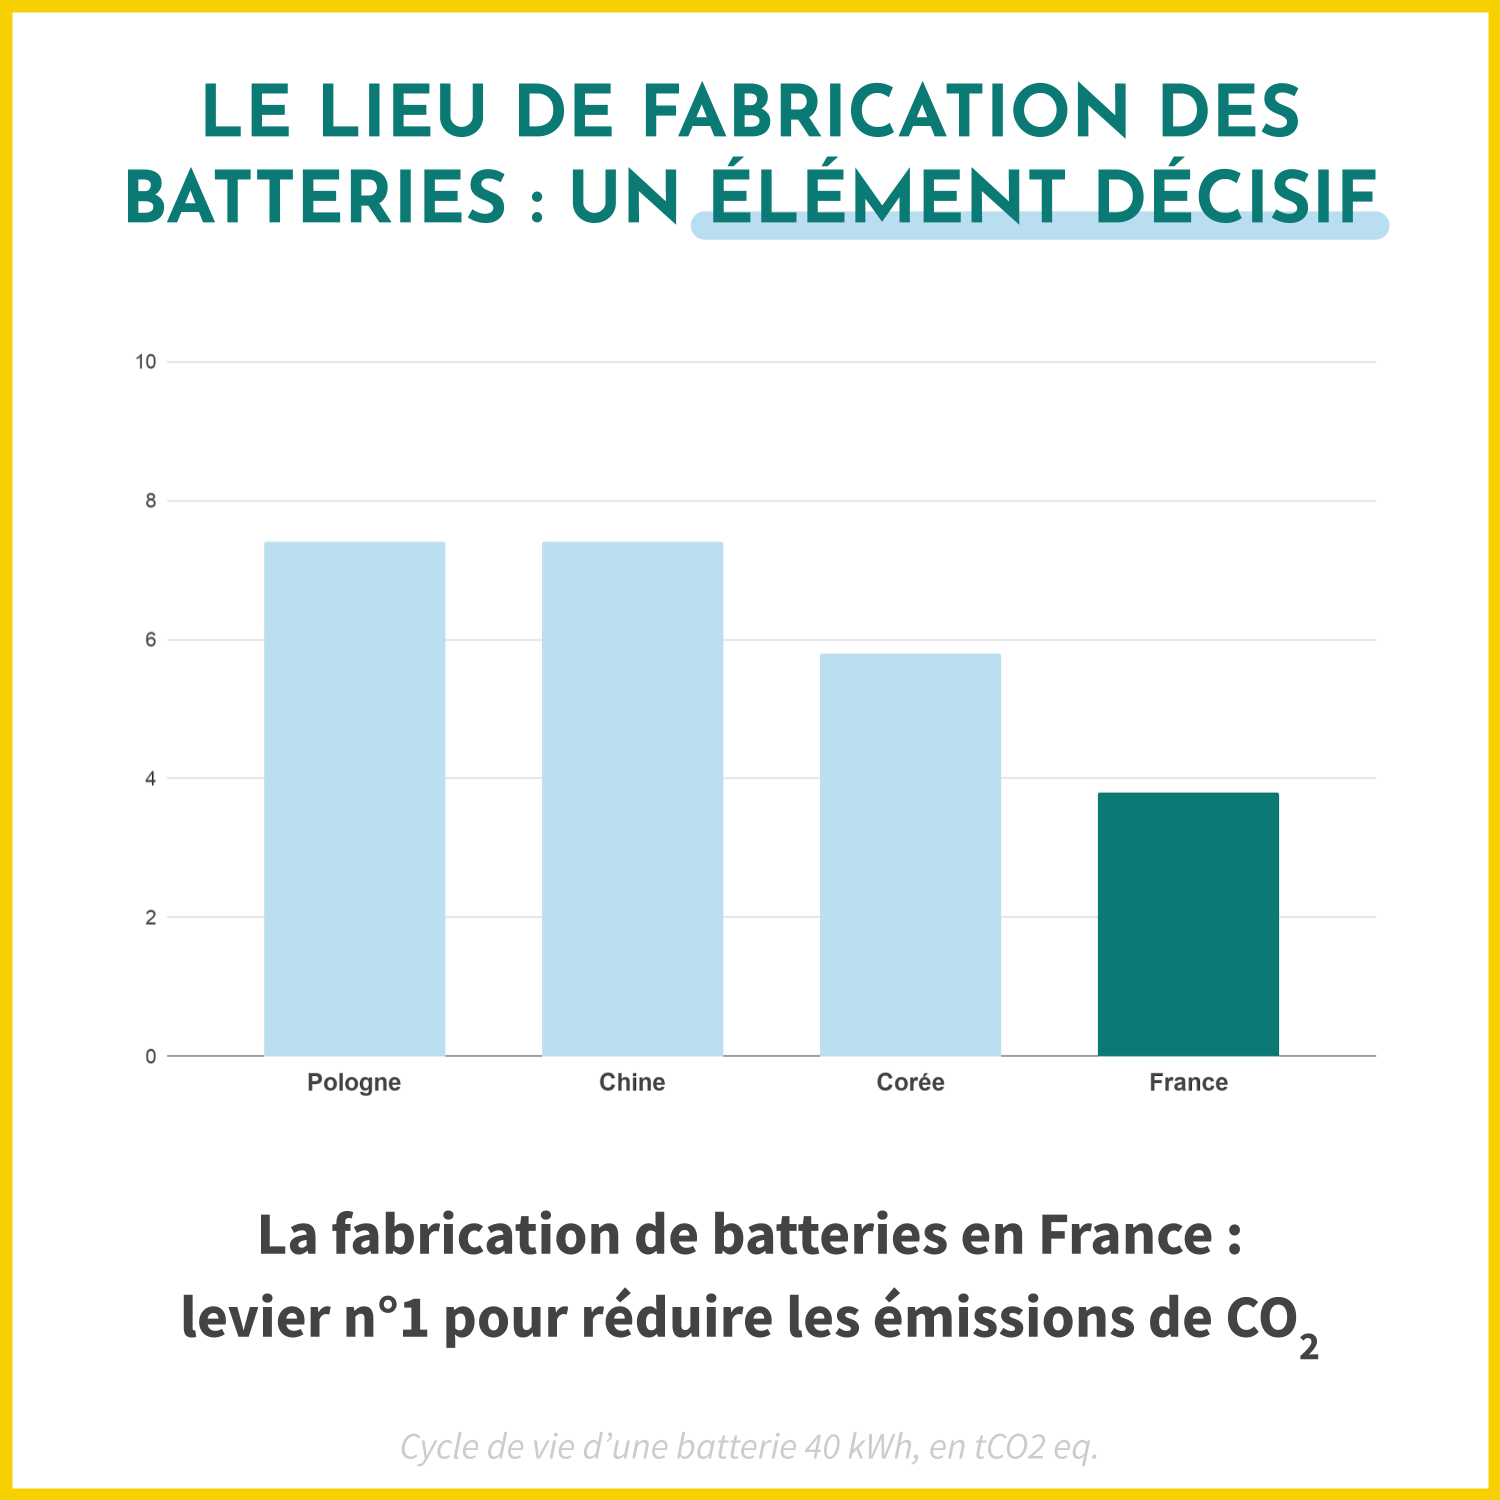 Le lieu de fabrication des batteries pour les voitures électriques est décisif dans la réduction des émissions de CO2. 